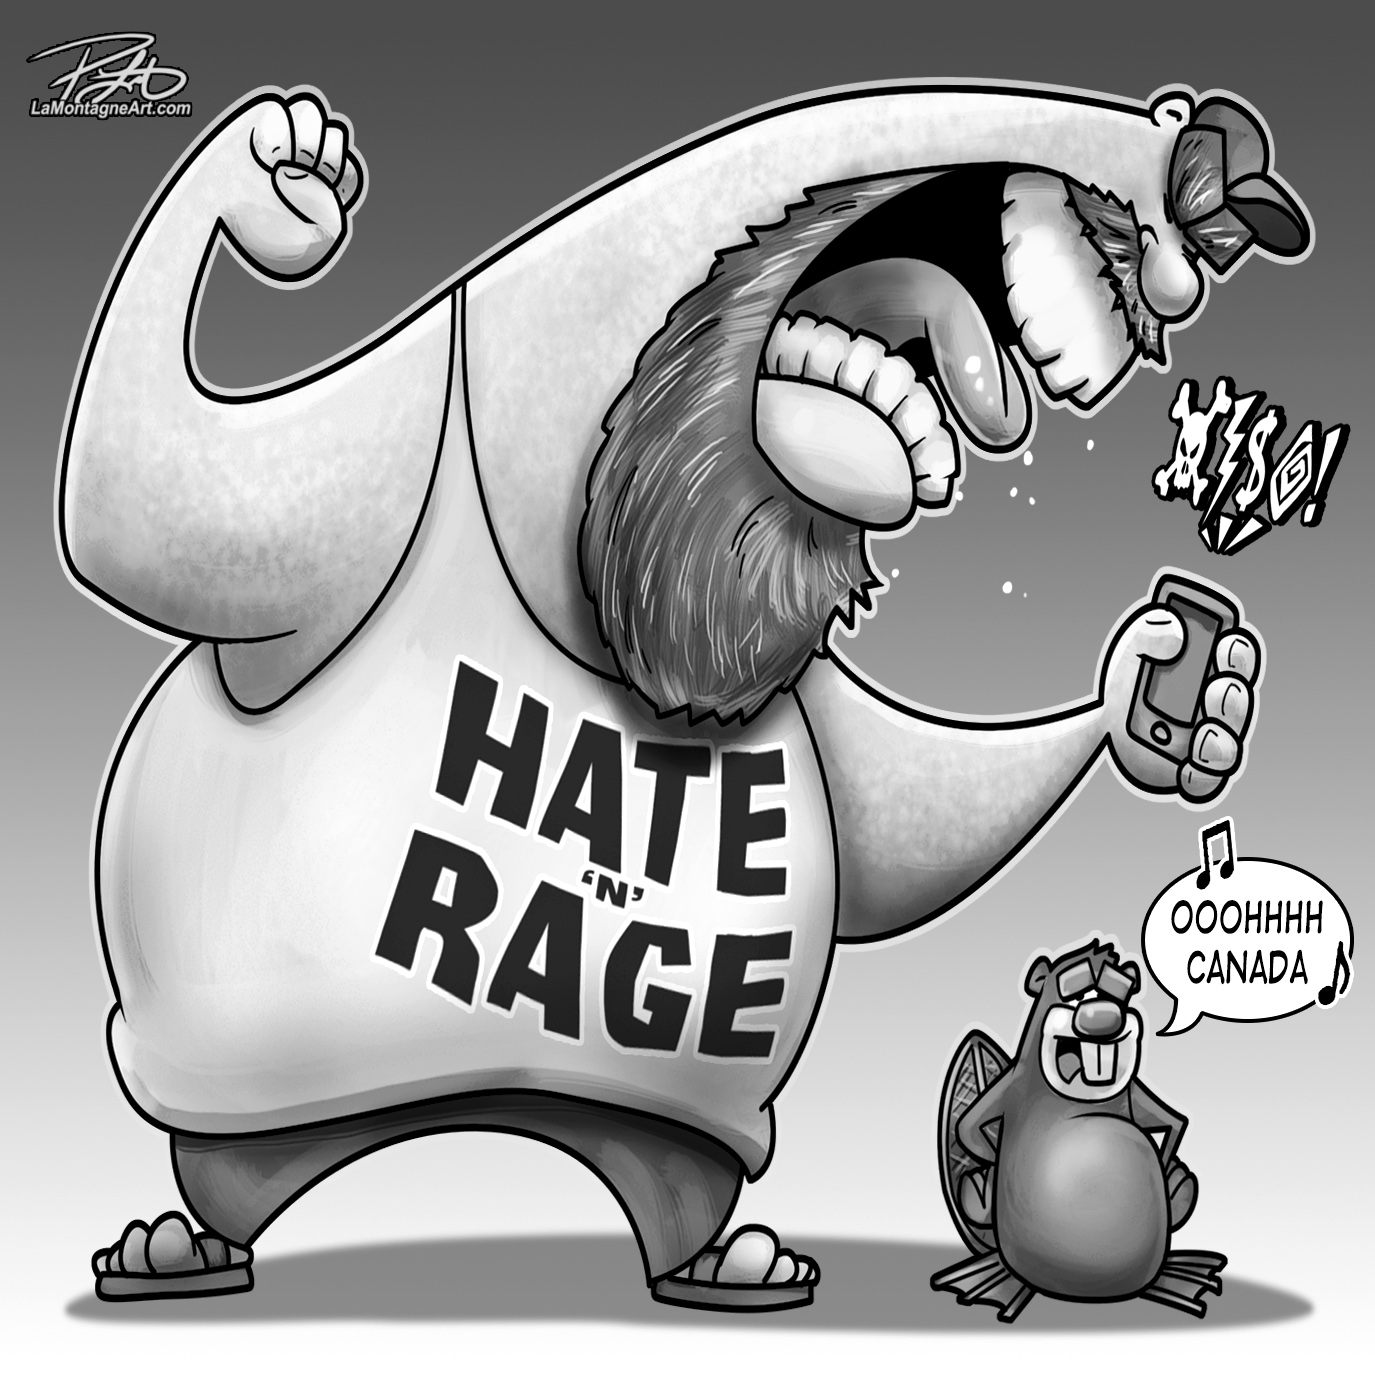 Hate & Rage